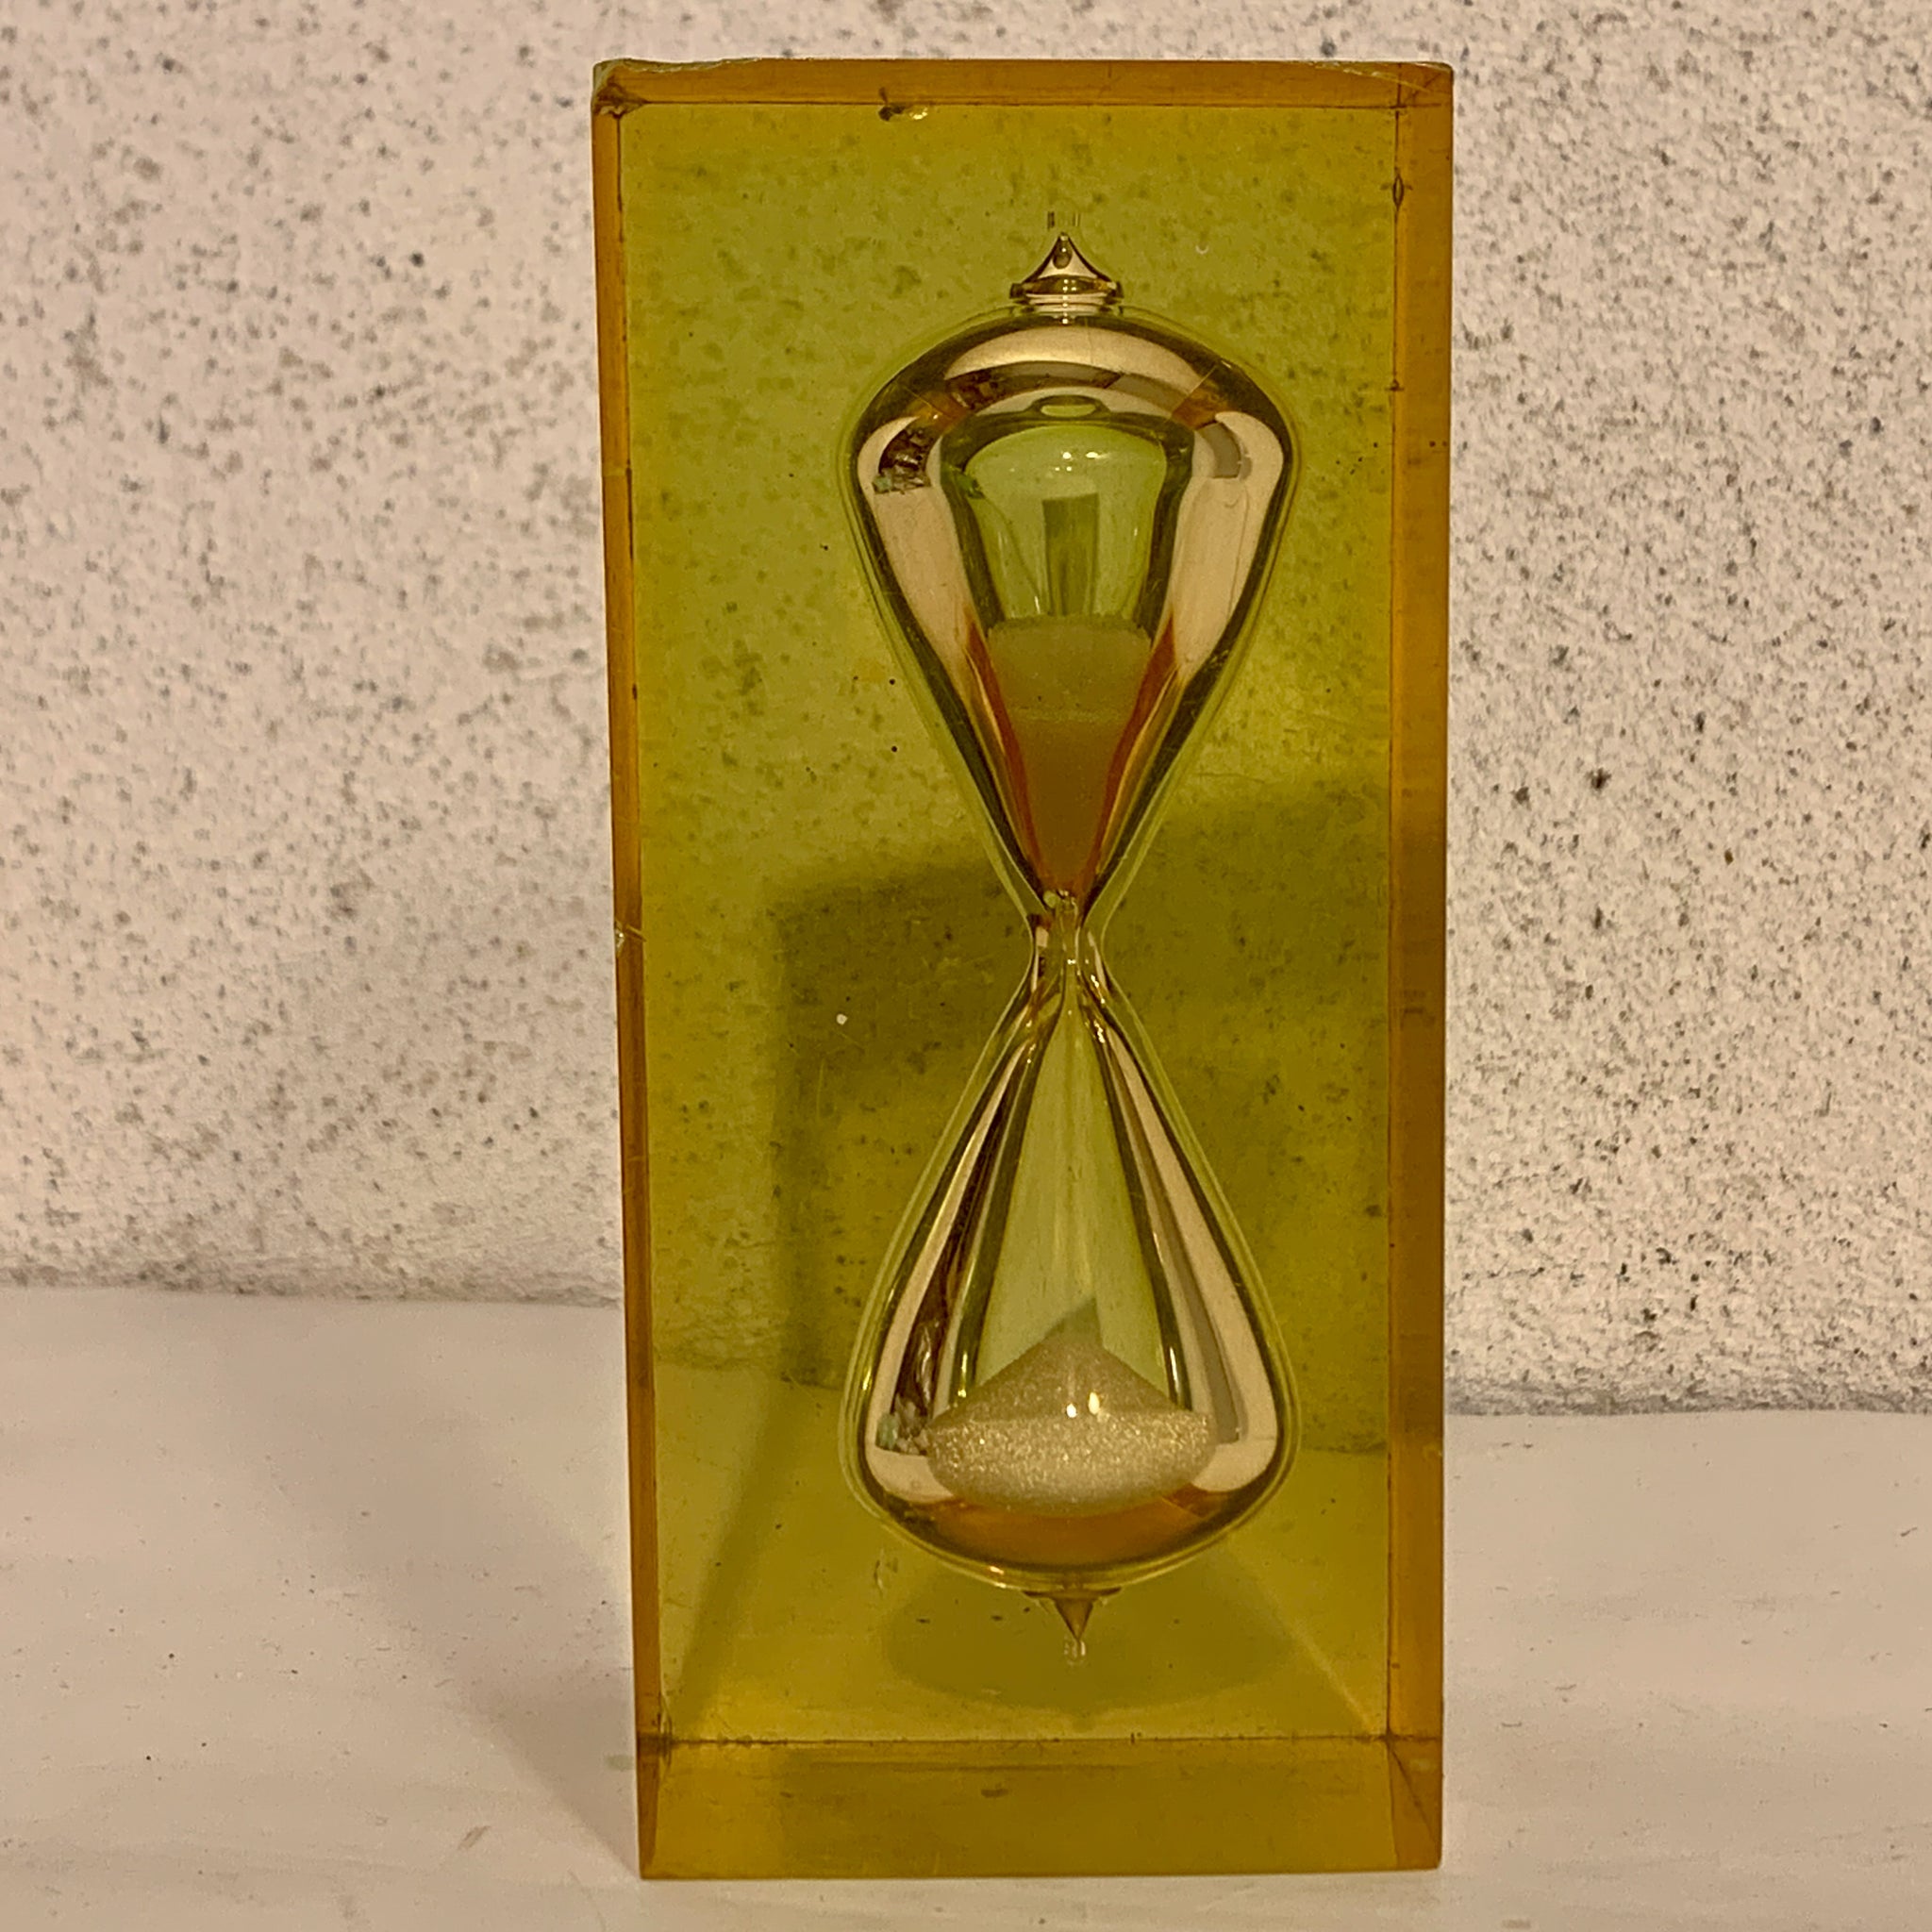 Fransk Giraudon timeglas, fra 1970érne.